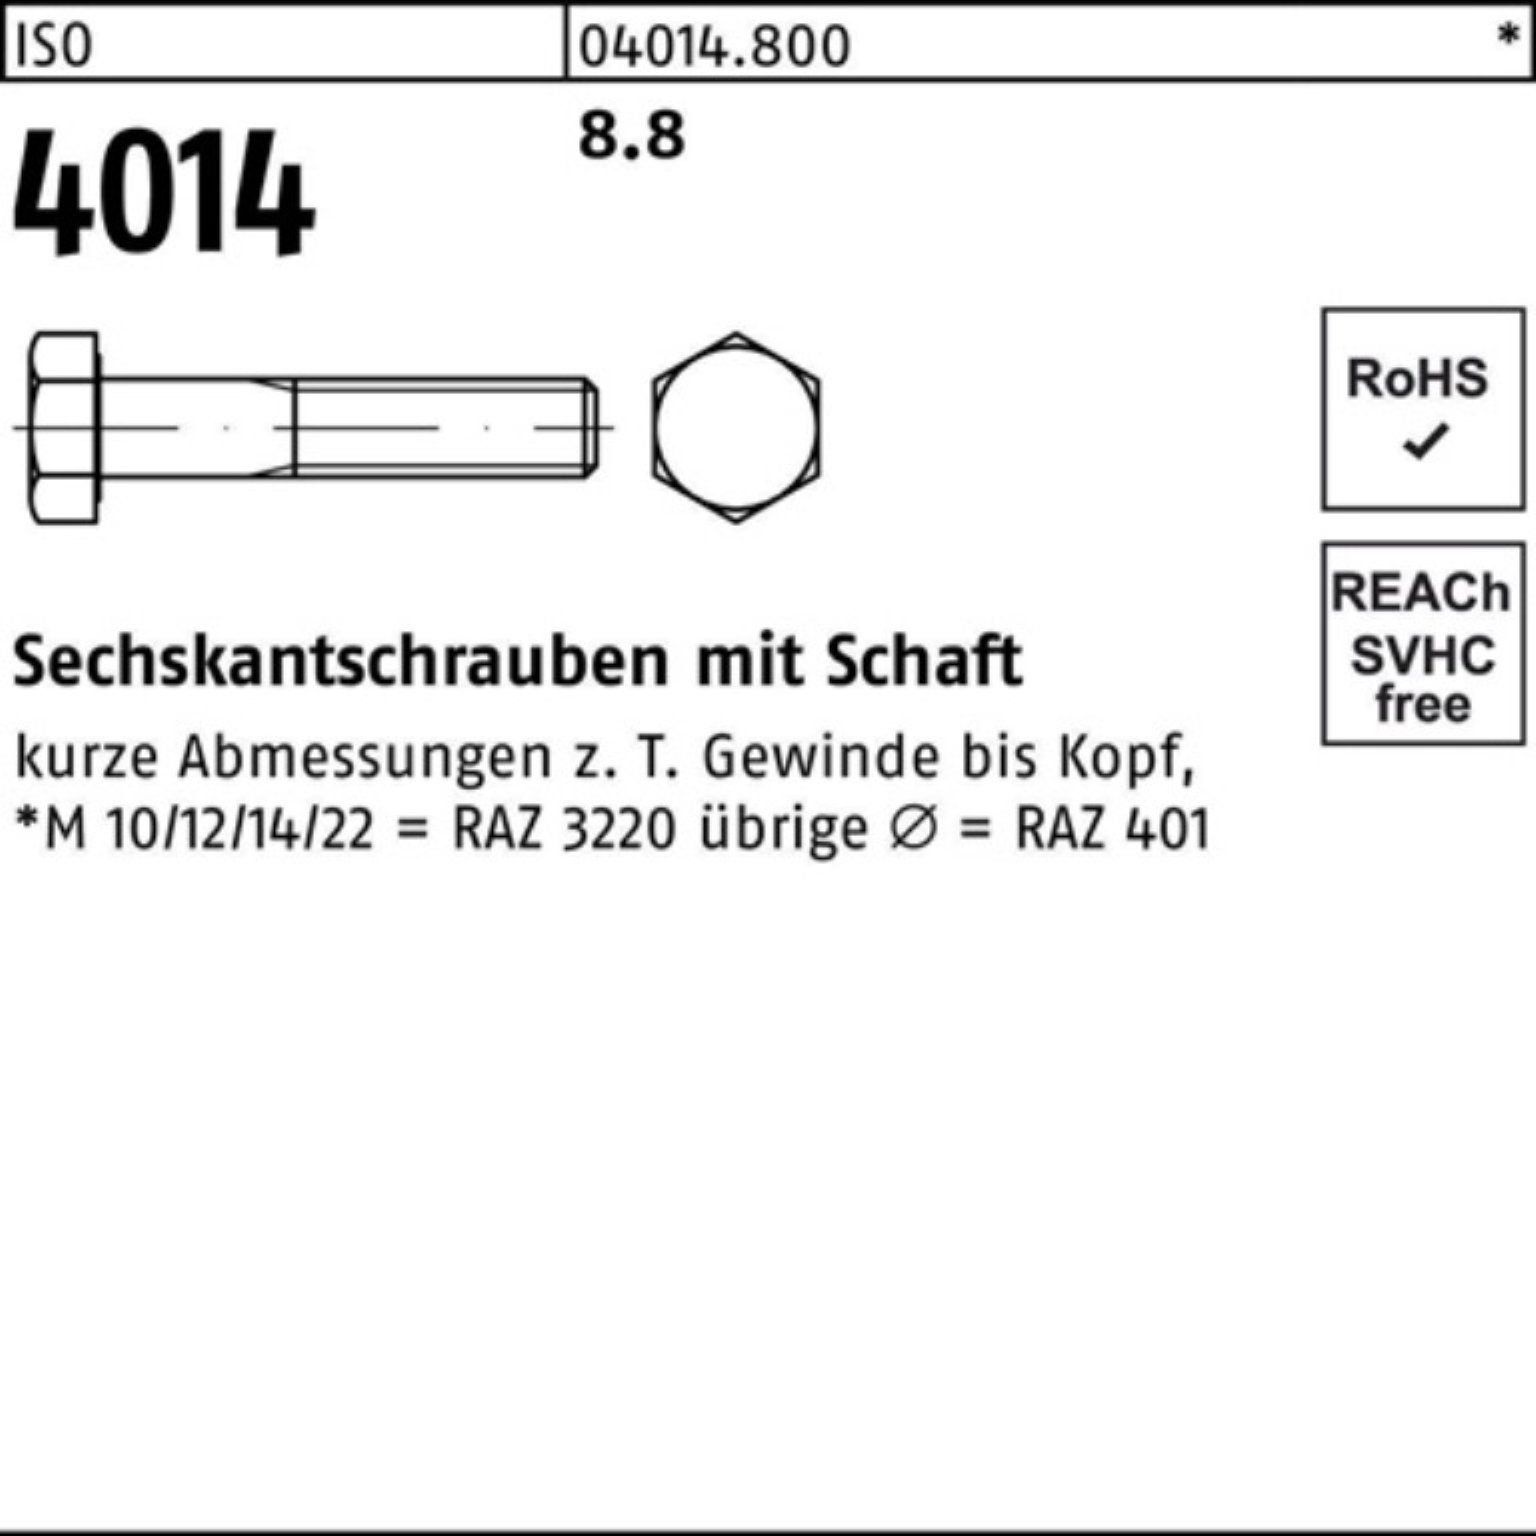 Bufab Sechskantschraube 100er Sechskantschraube M6x 100 Stück 8.8 160 Pack 4014 ISO Schaft IS